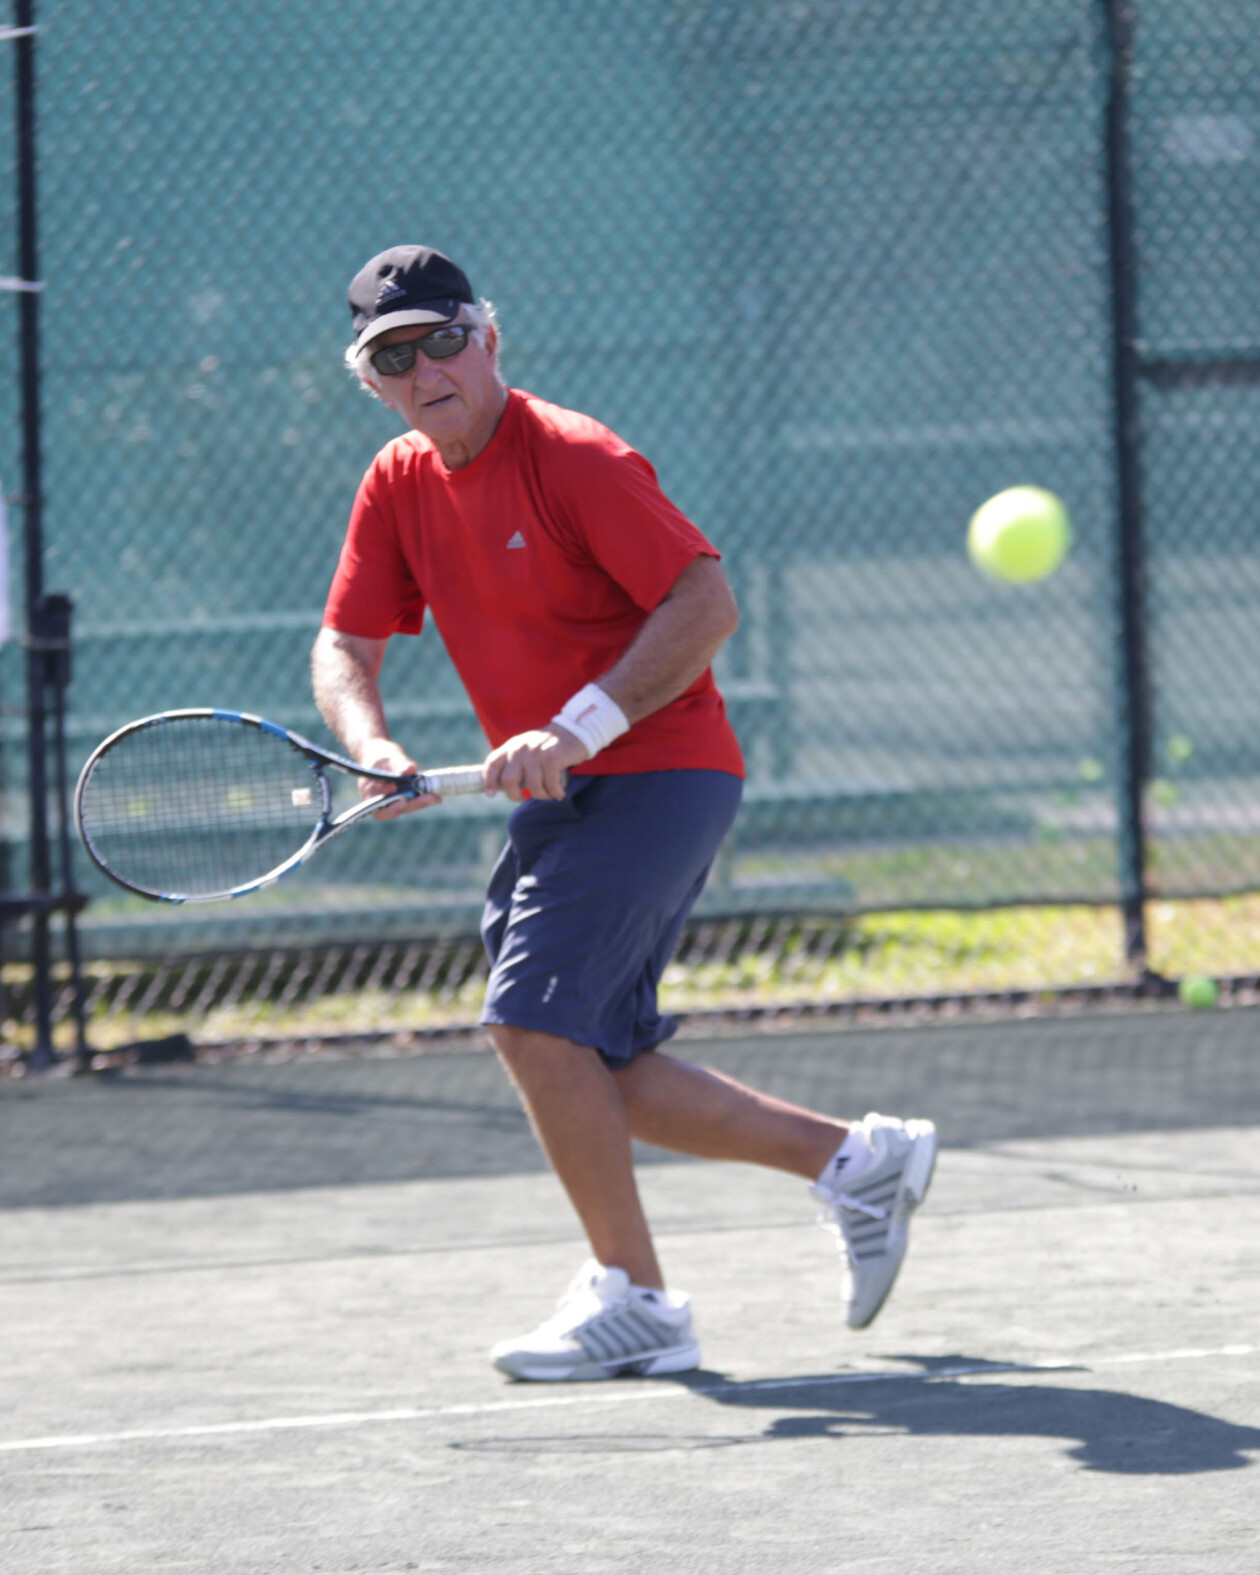 Man playing tennis.